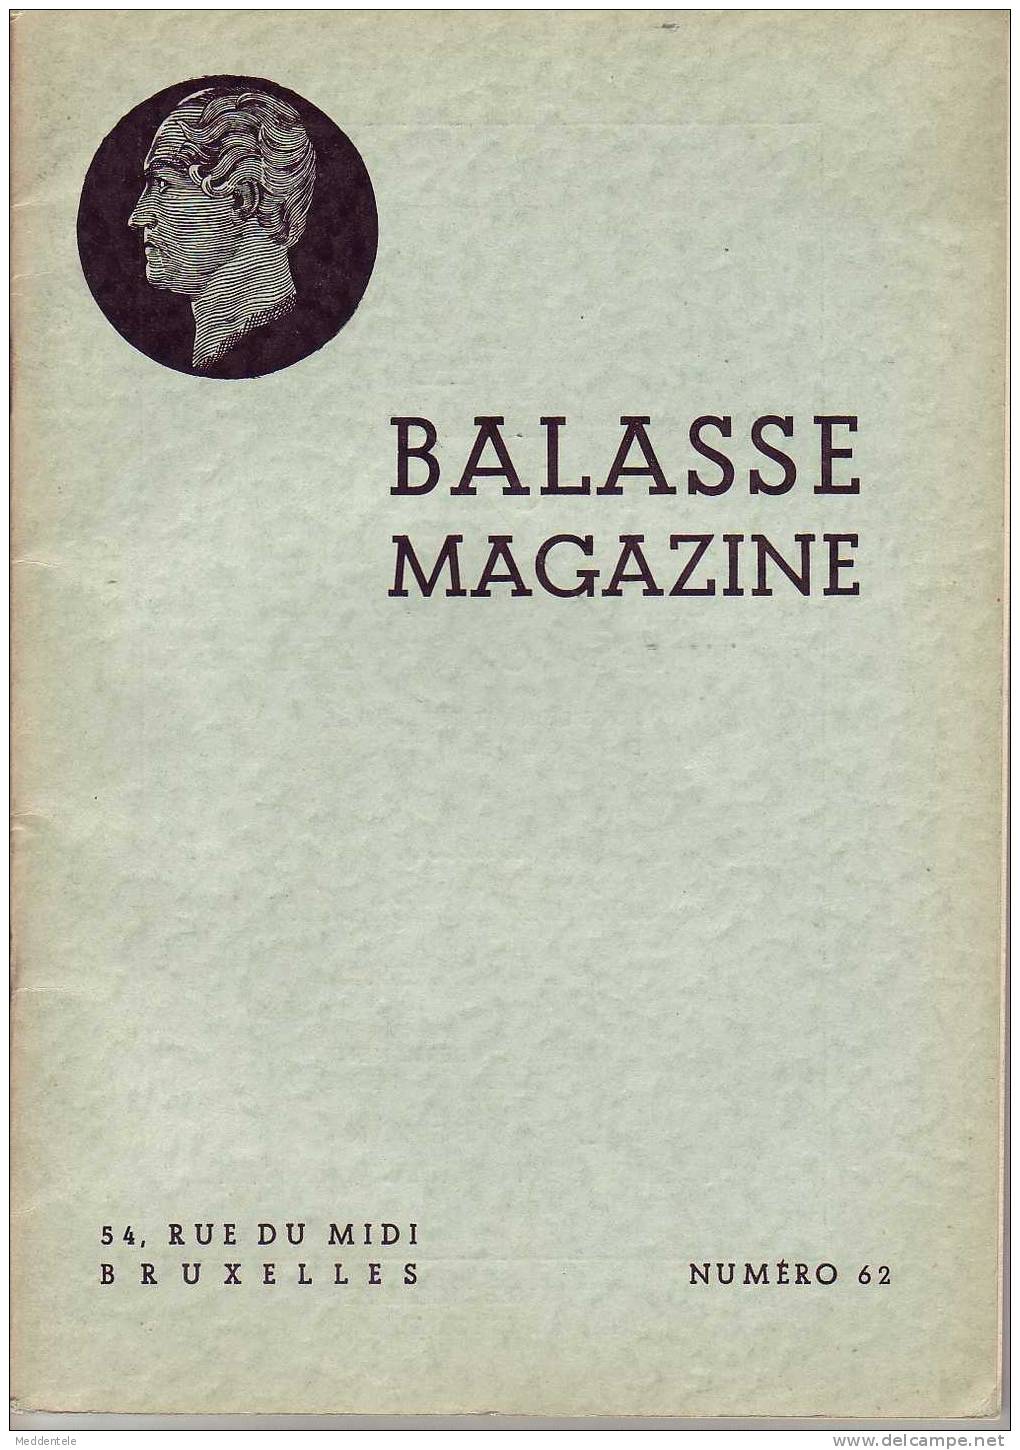 BALASSE MAGAZINE N° 62 - Français (àpd. 1941)